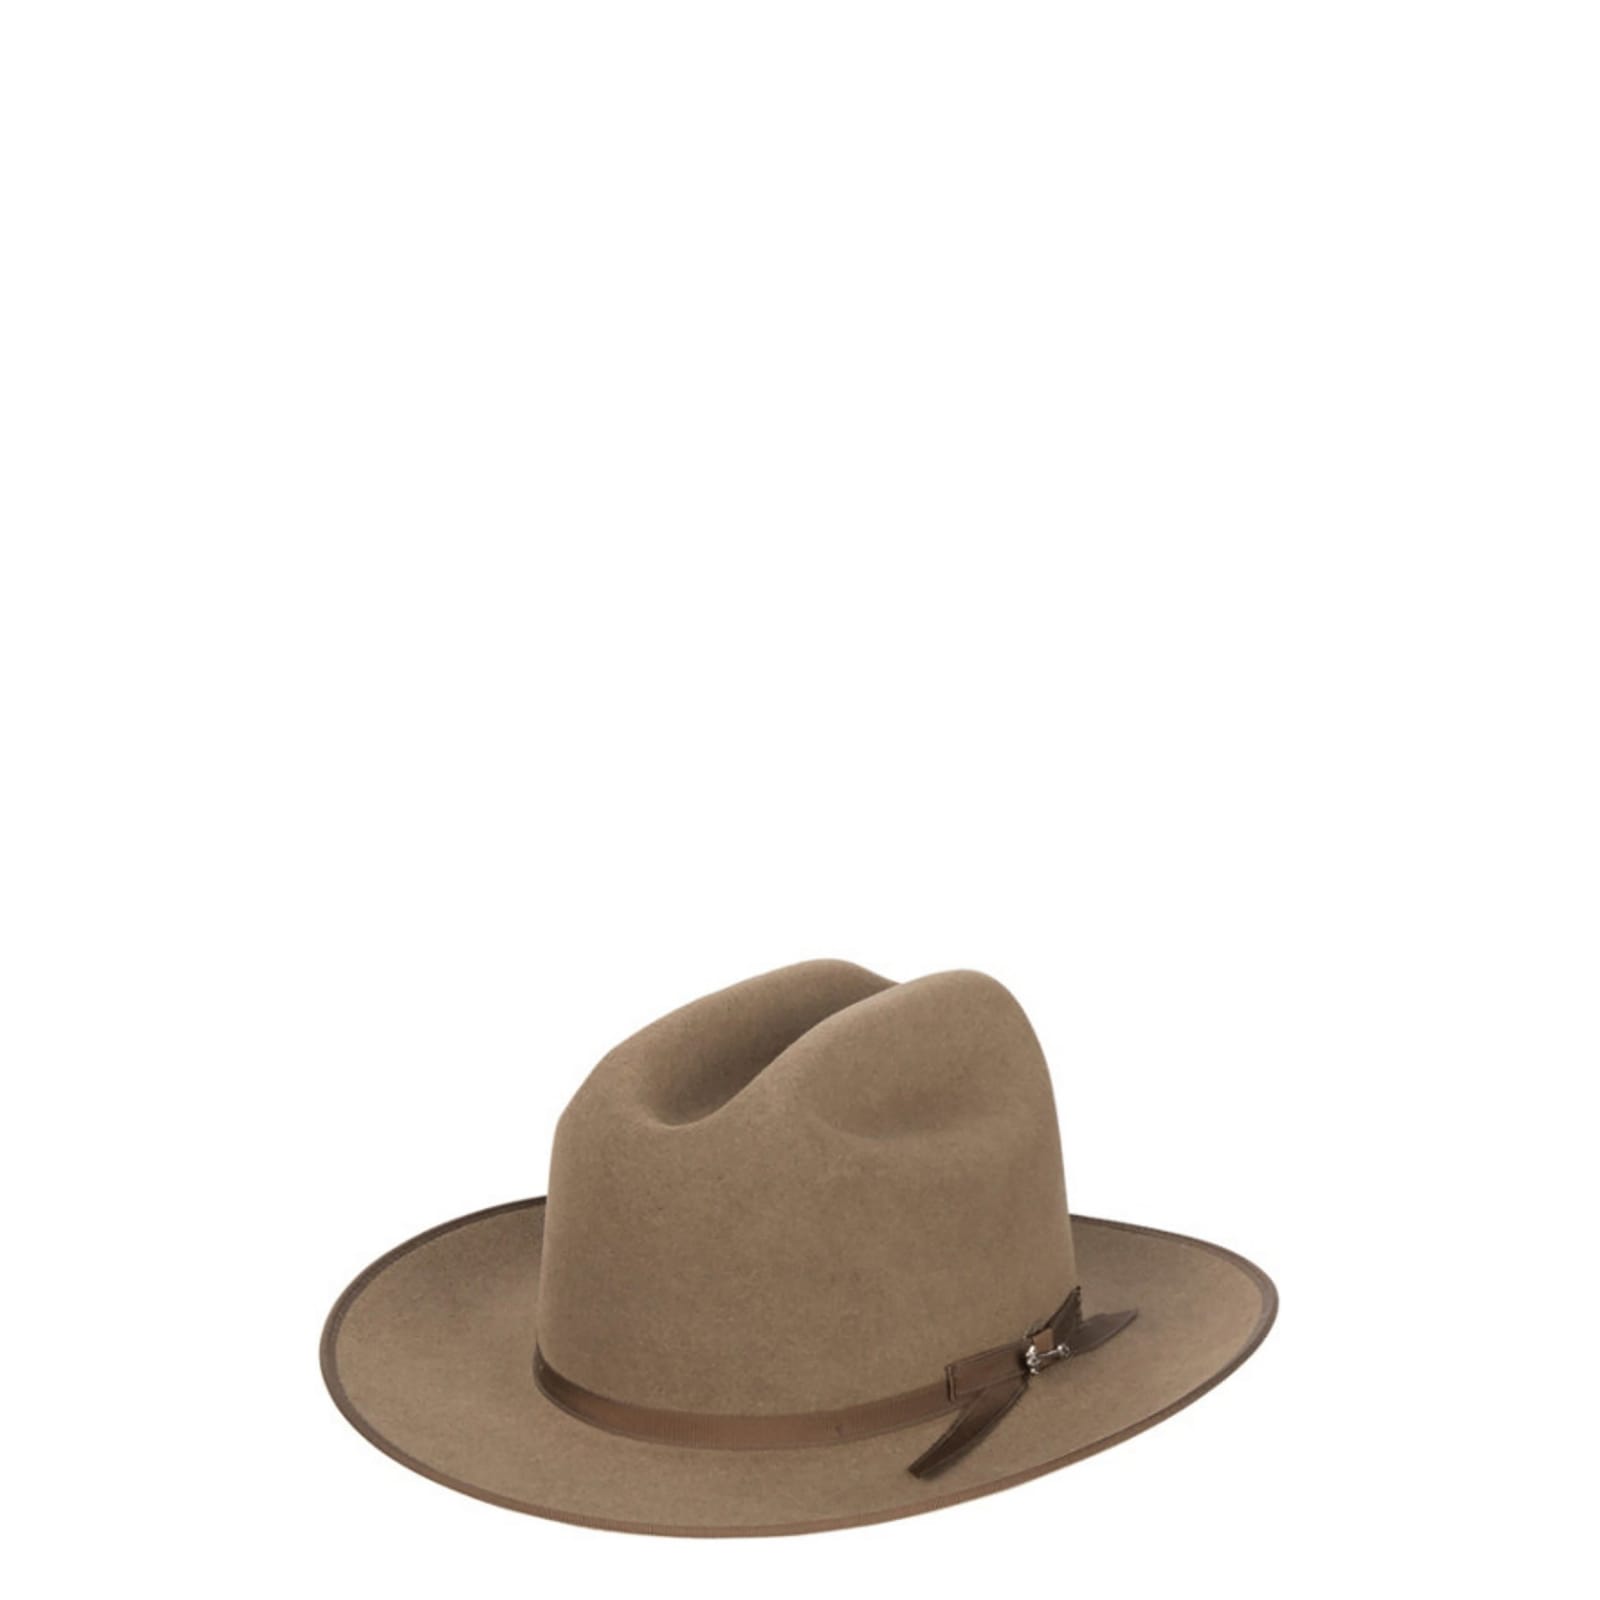 ontgrendelen Vervallen Locomotief Stetson 6X Open Road Brown Mix Felt Cowboy Hat available at Cavenders